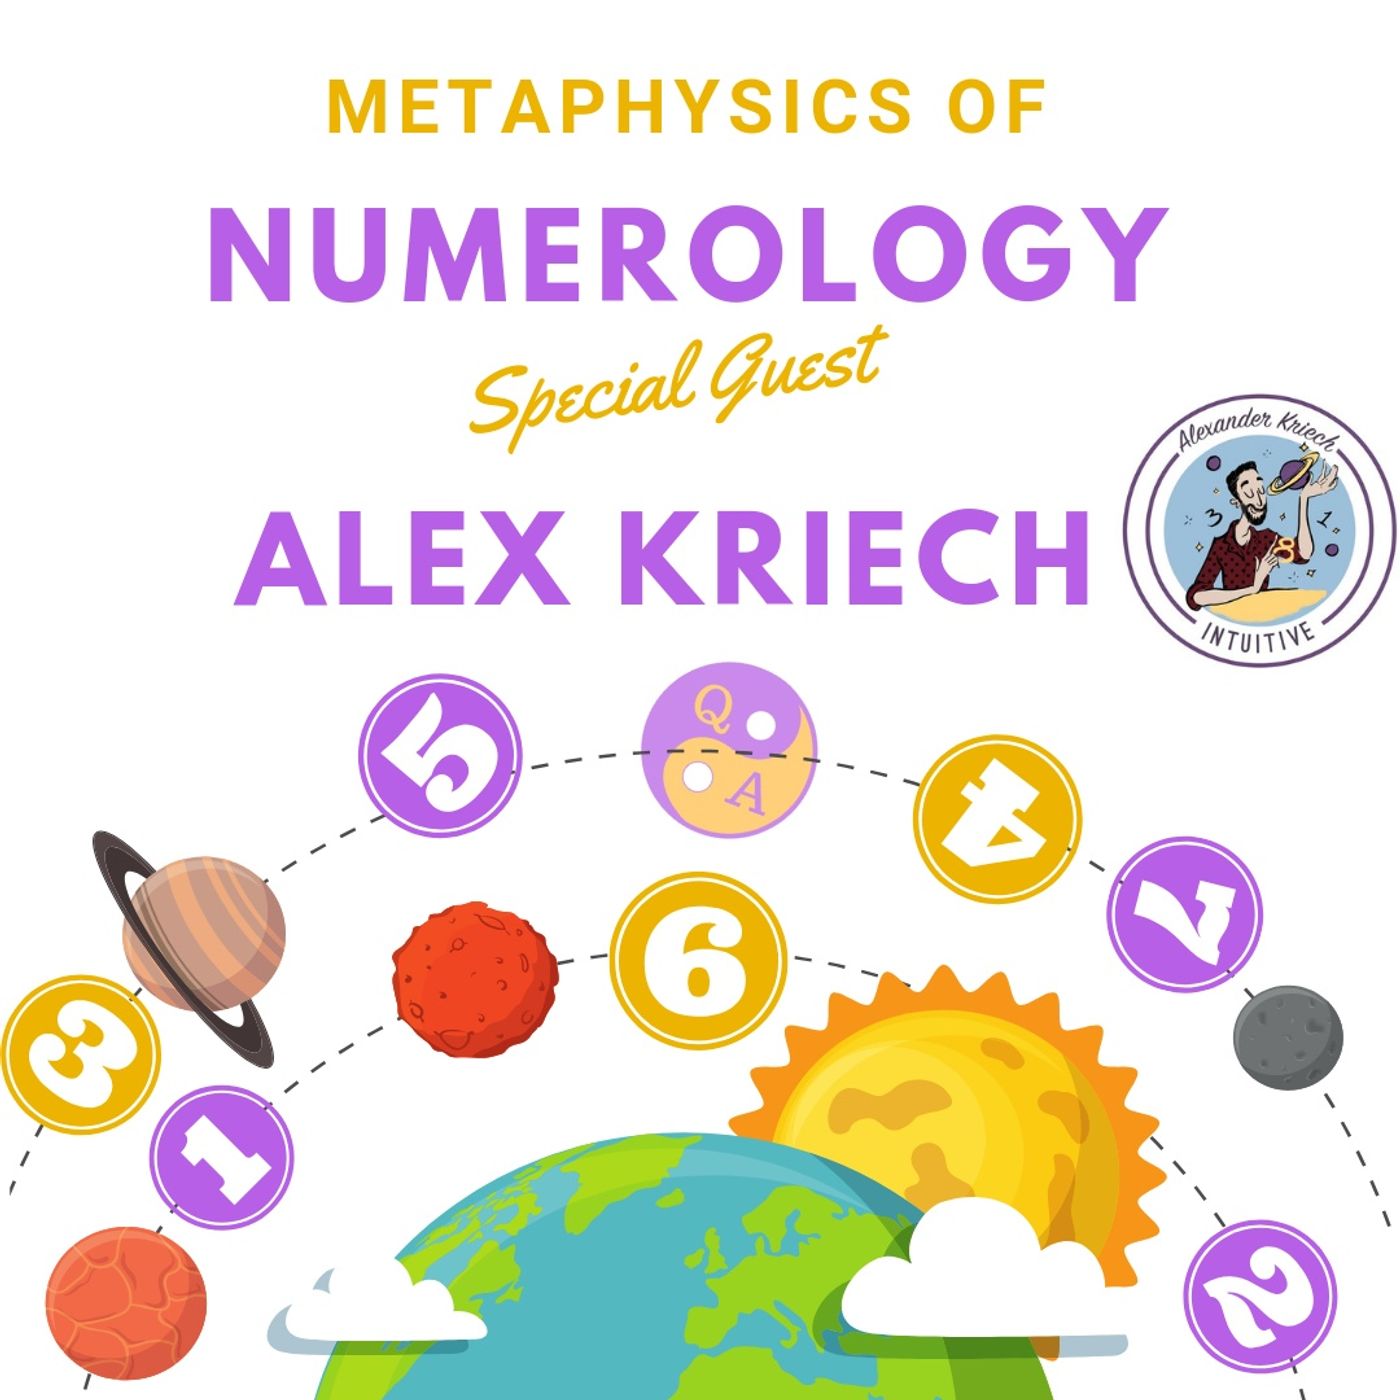 Metaphysics of Numerology